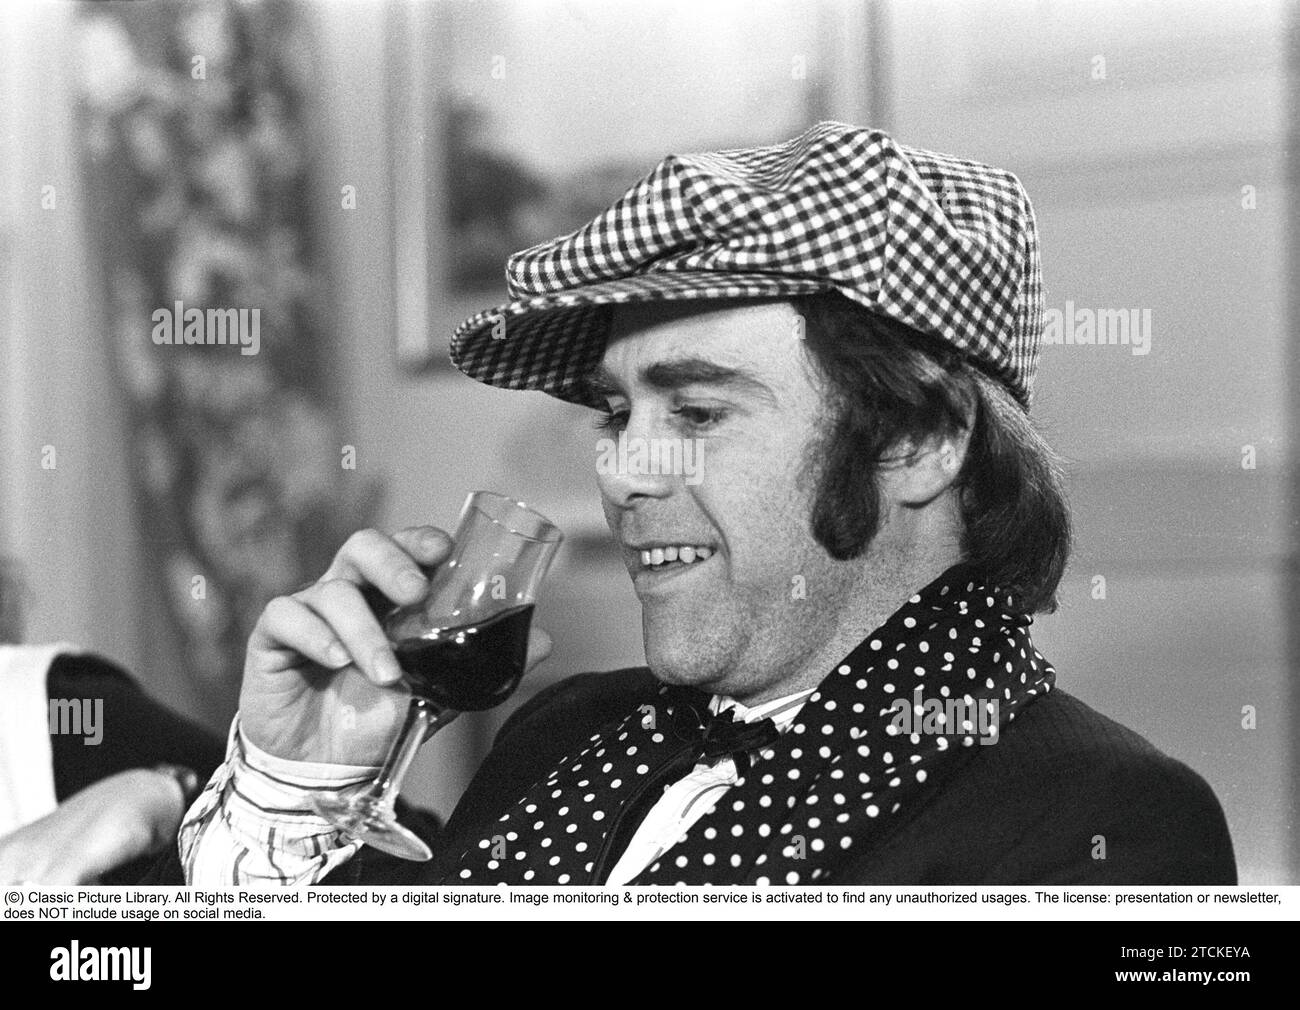 Elton John. Englische Sängerin, Songwriterin geboren märz 25 1947. Abgebildet trägt eine karierte Mütze und einen passenden karierten Schal während eines Besuchs in Schweden 1978 Stockfoto